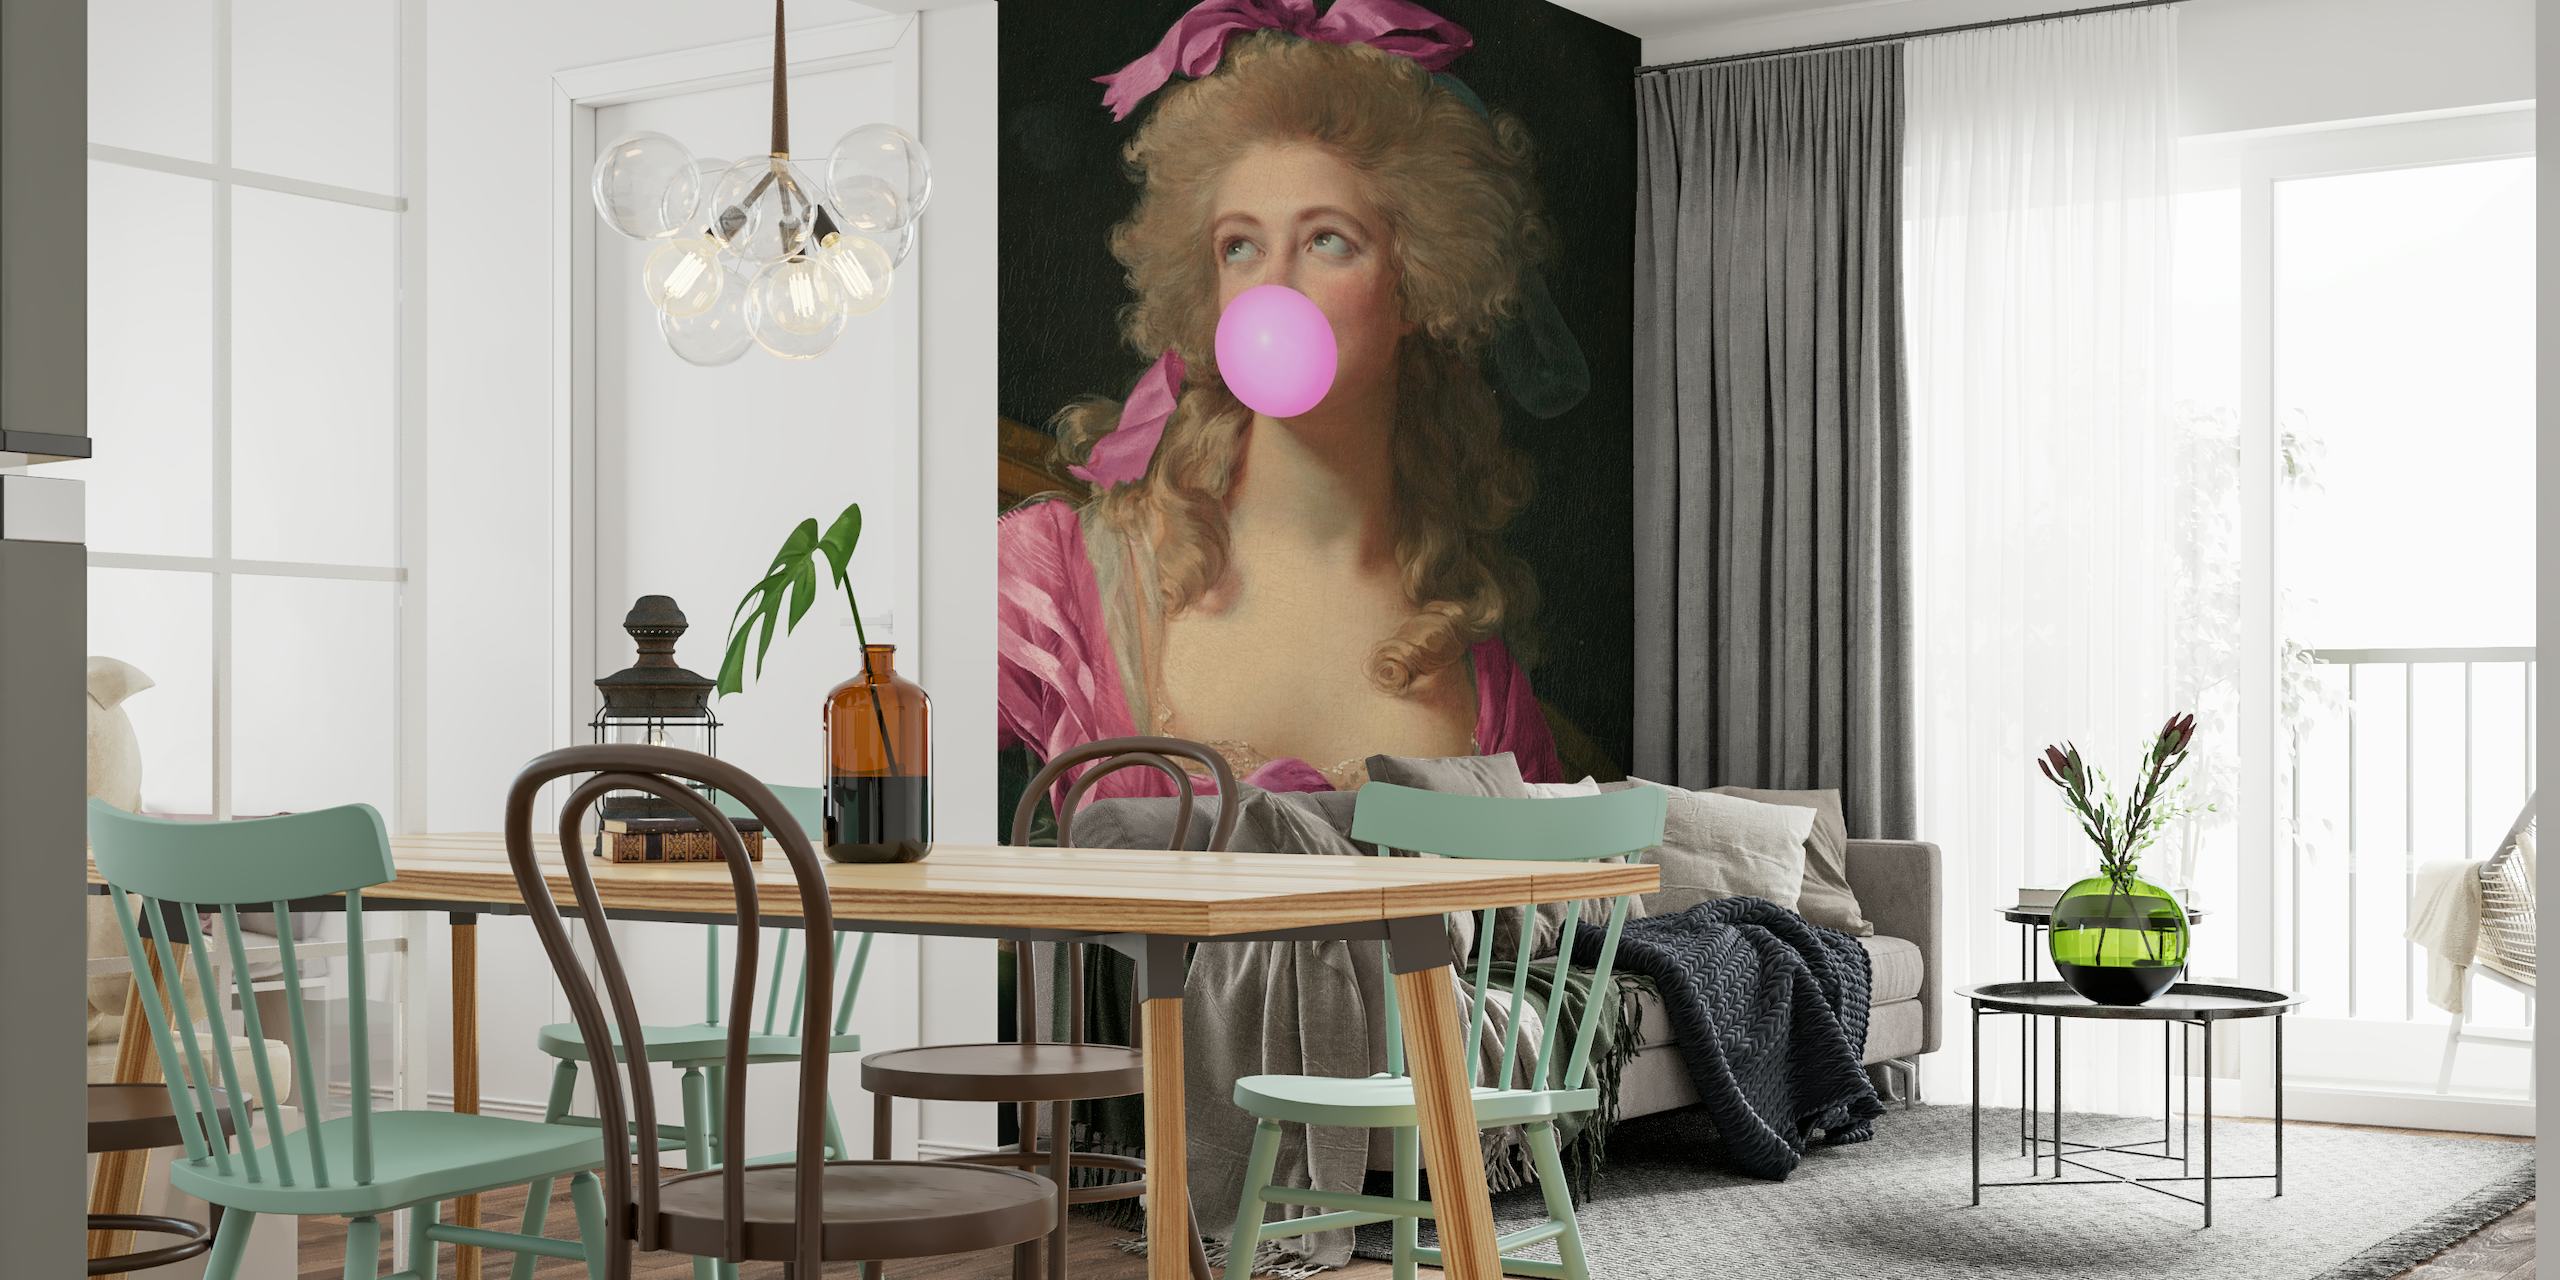 Madame Bubble-Gum mörkrosa tapet med ett porträtt i barockstil av en dam som blåser en tuggummibubbla